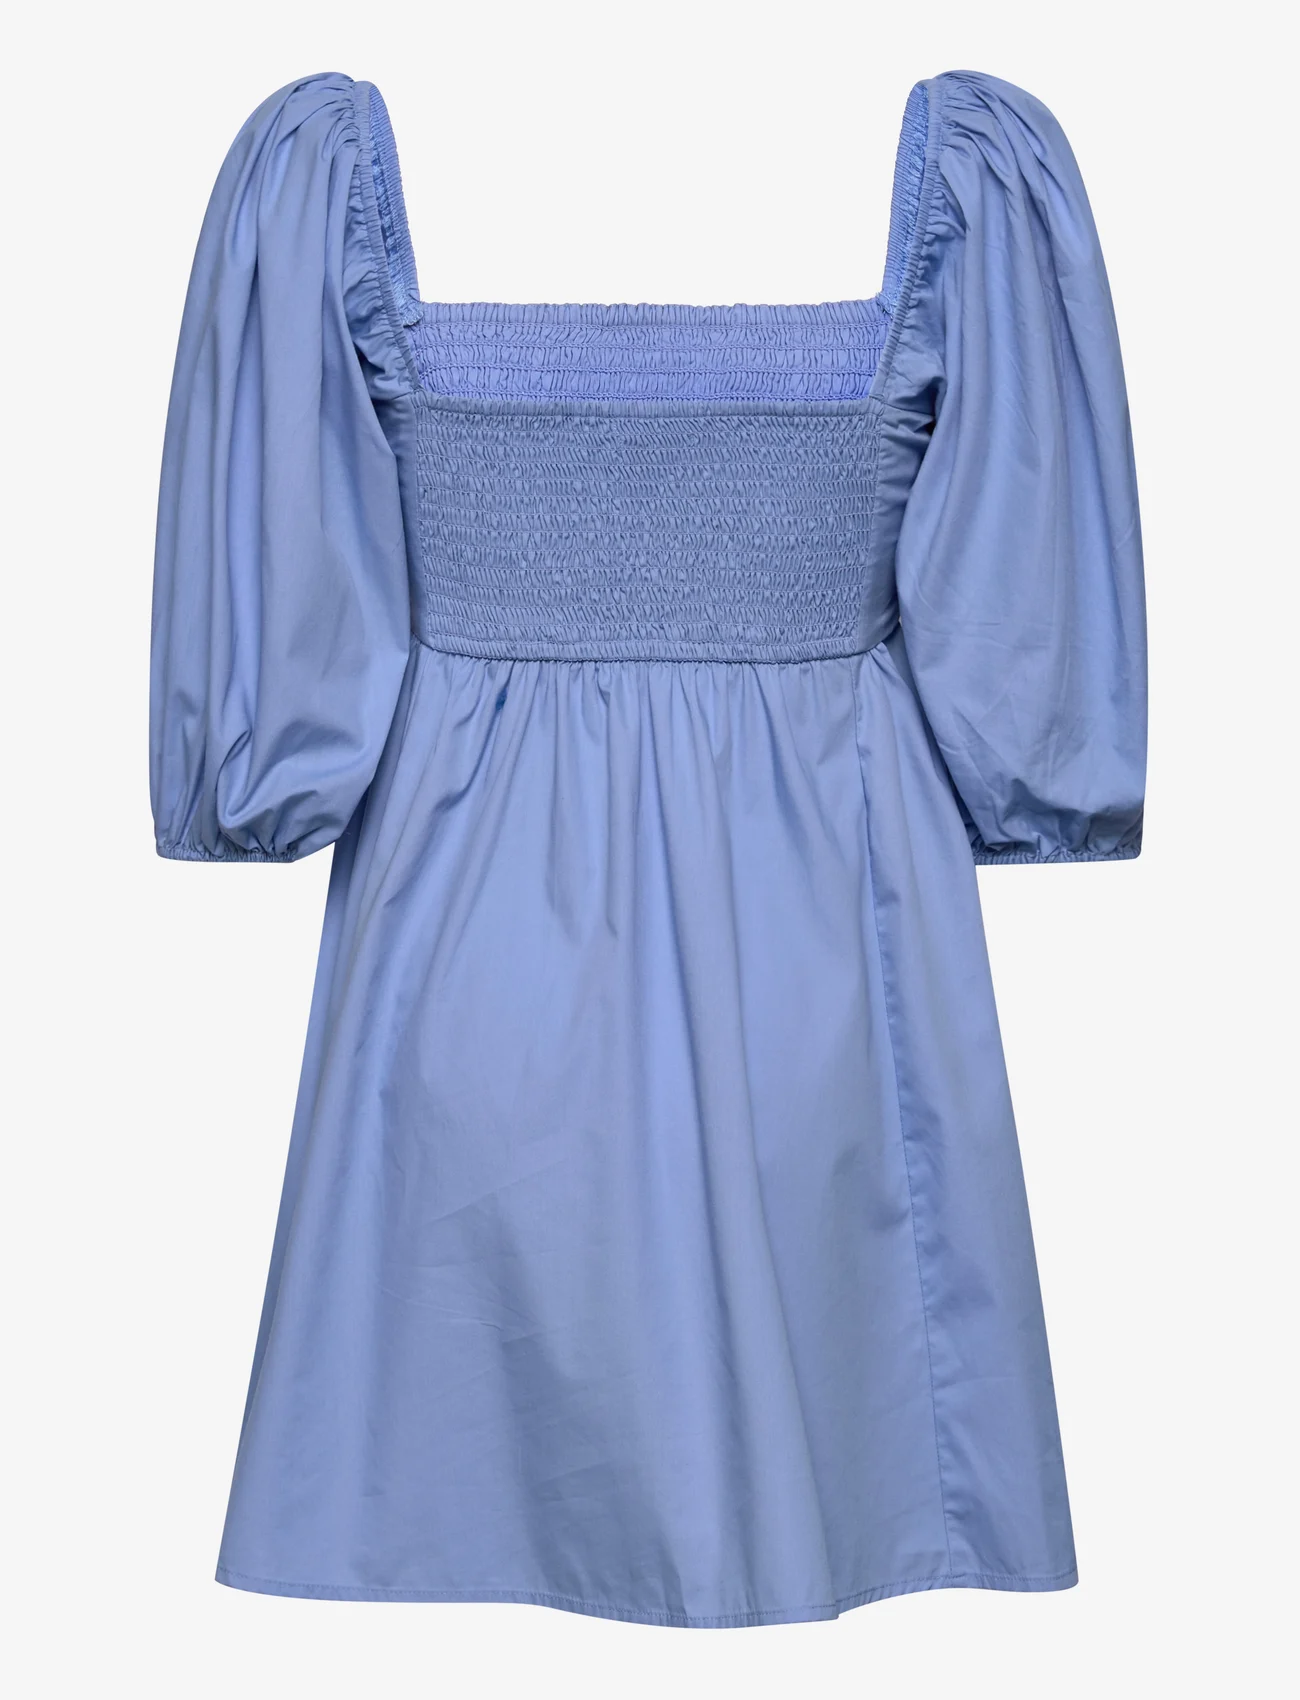 Abercrombie & Fitch - ANF WOMENS DRESSES - korte kjoler - blue - 1